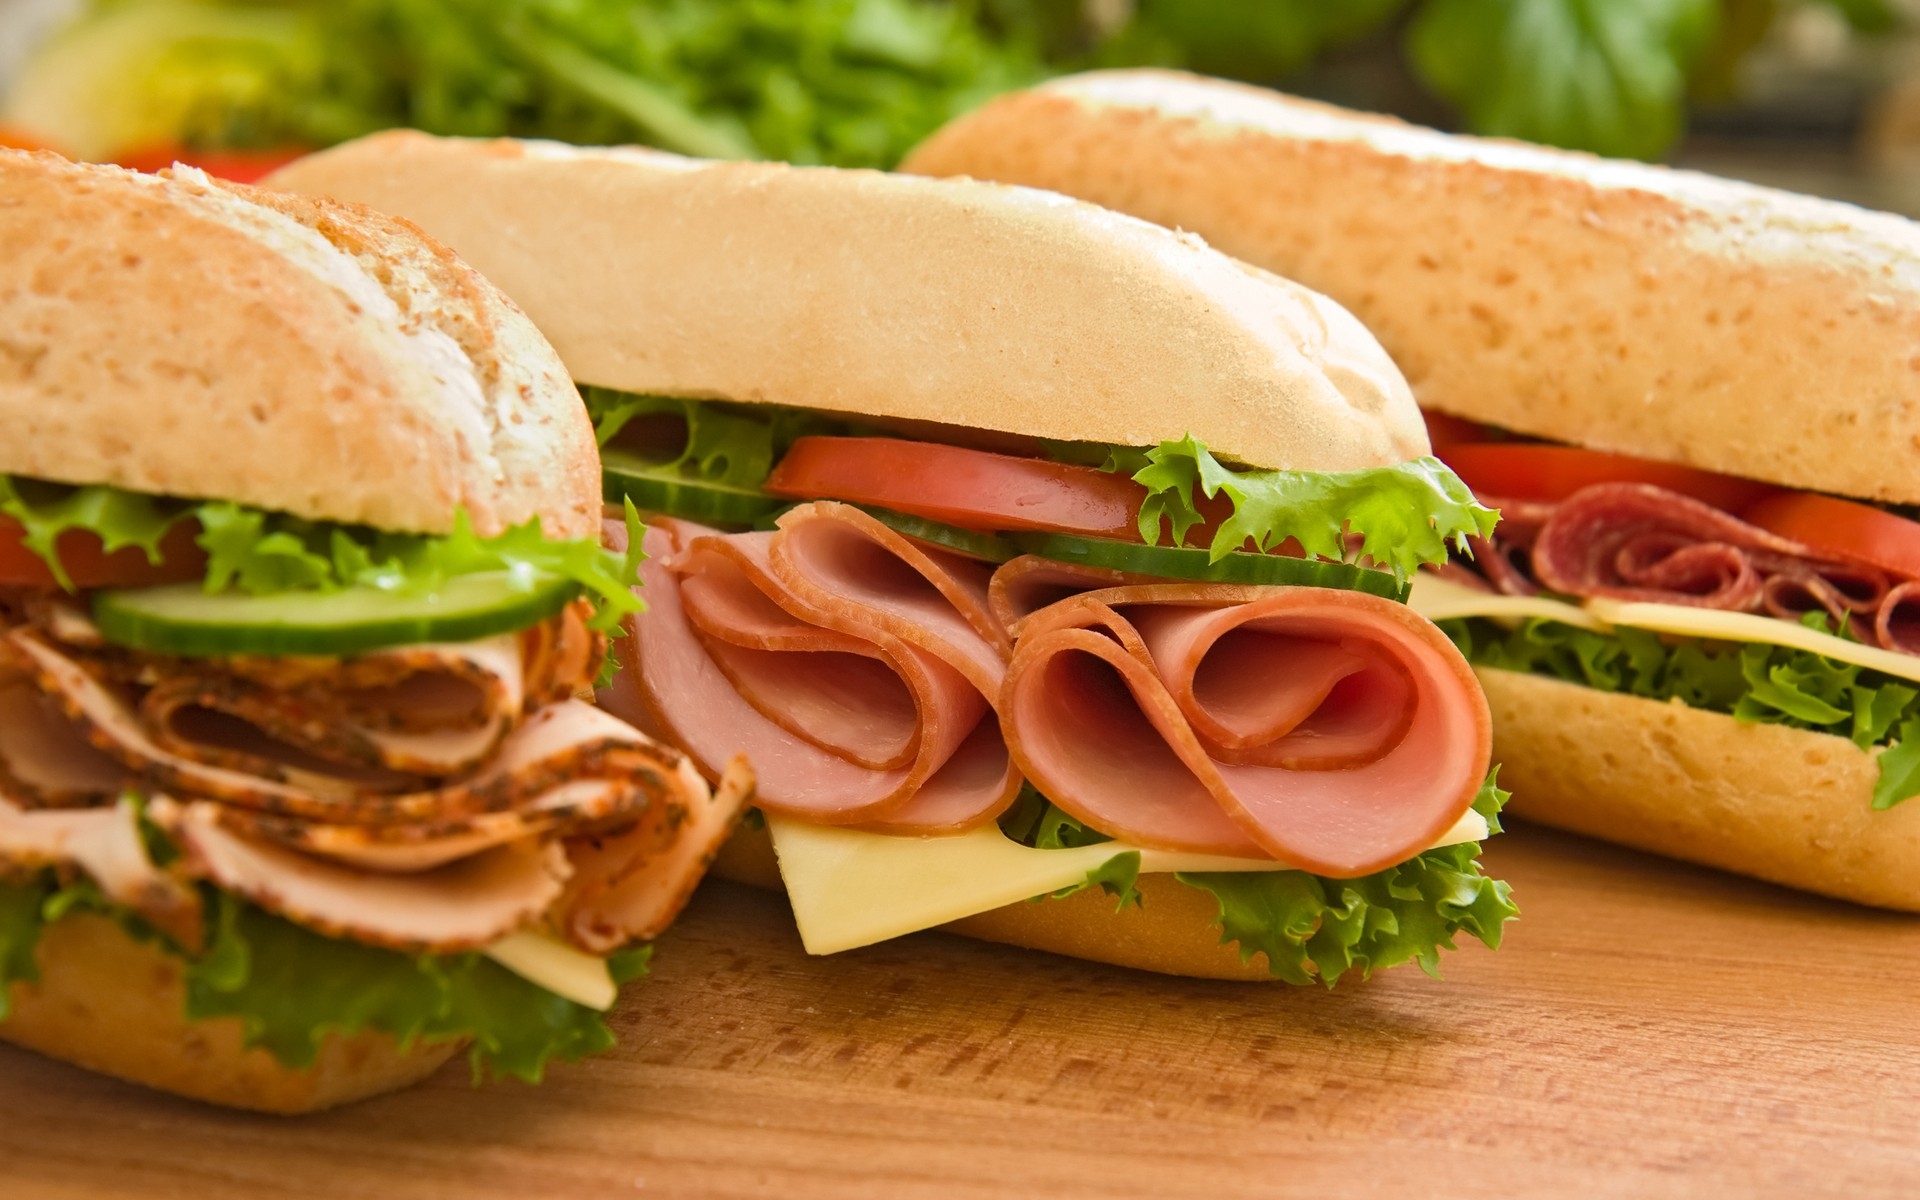 Картинки Булочки, бутерброды, мясо, сыр, овощи фото и обои на рабочий стол